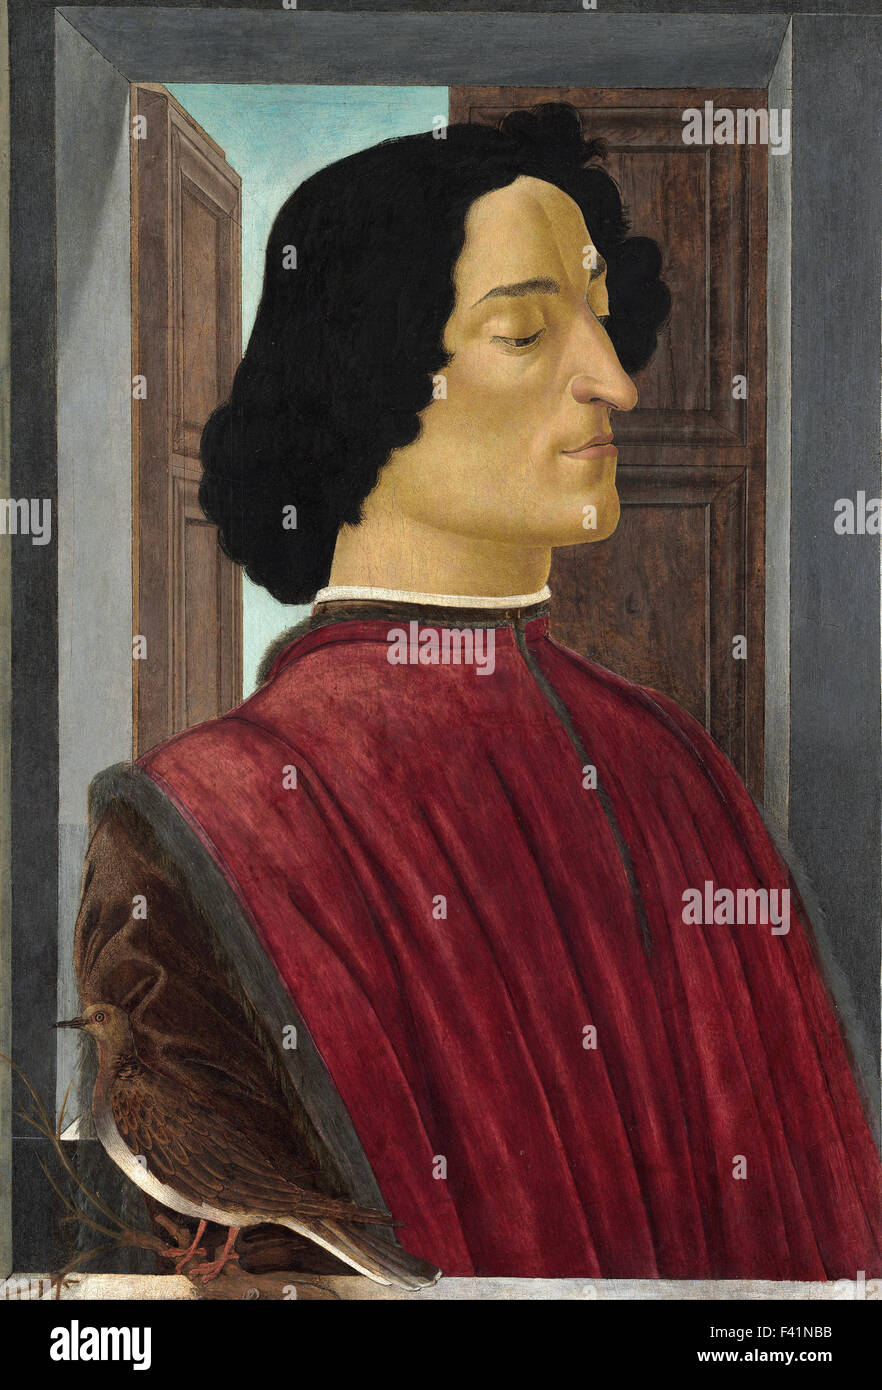 Sandro Botticelli - Giuliano de' Medici Stock Photo